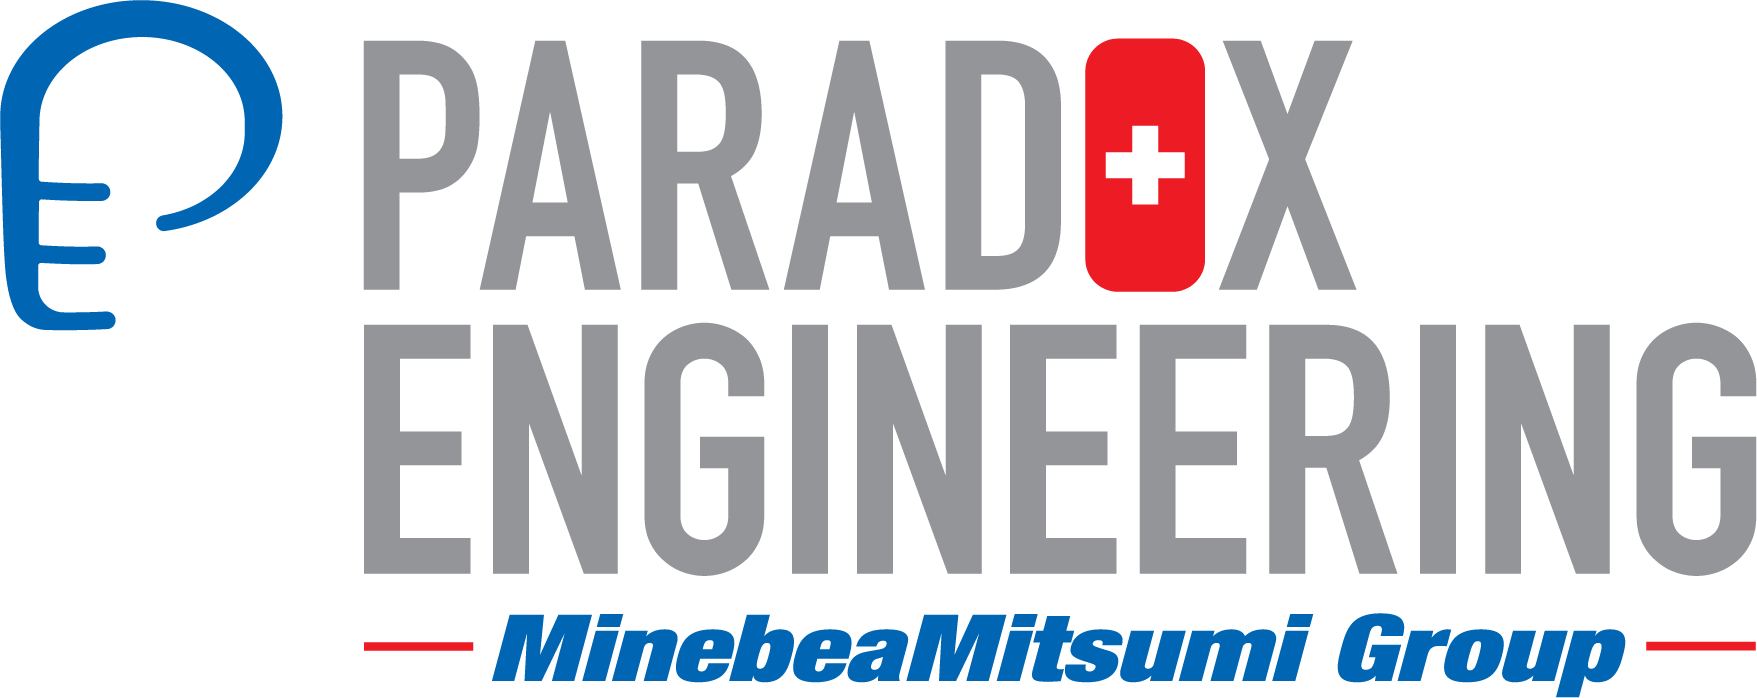 paradox engineering logo